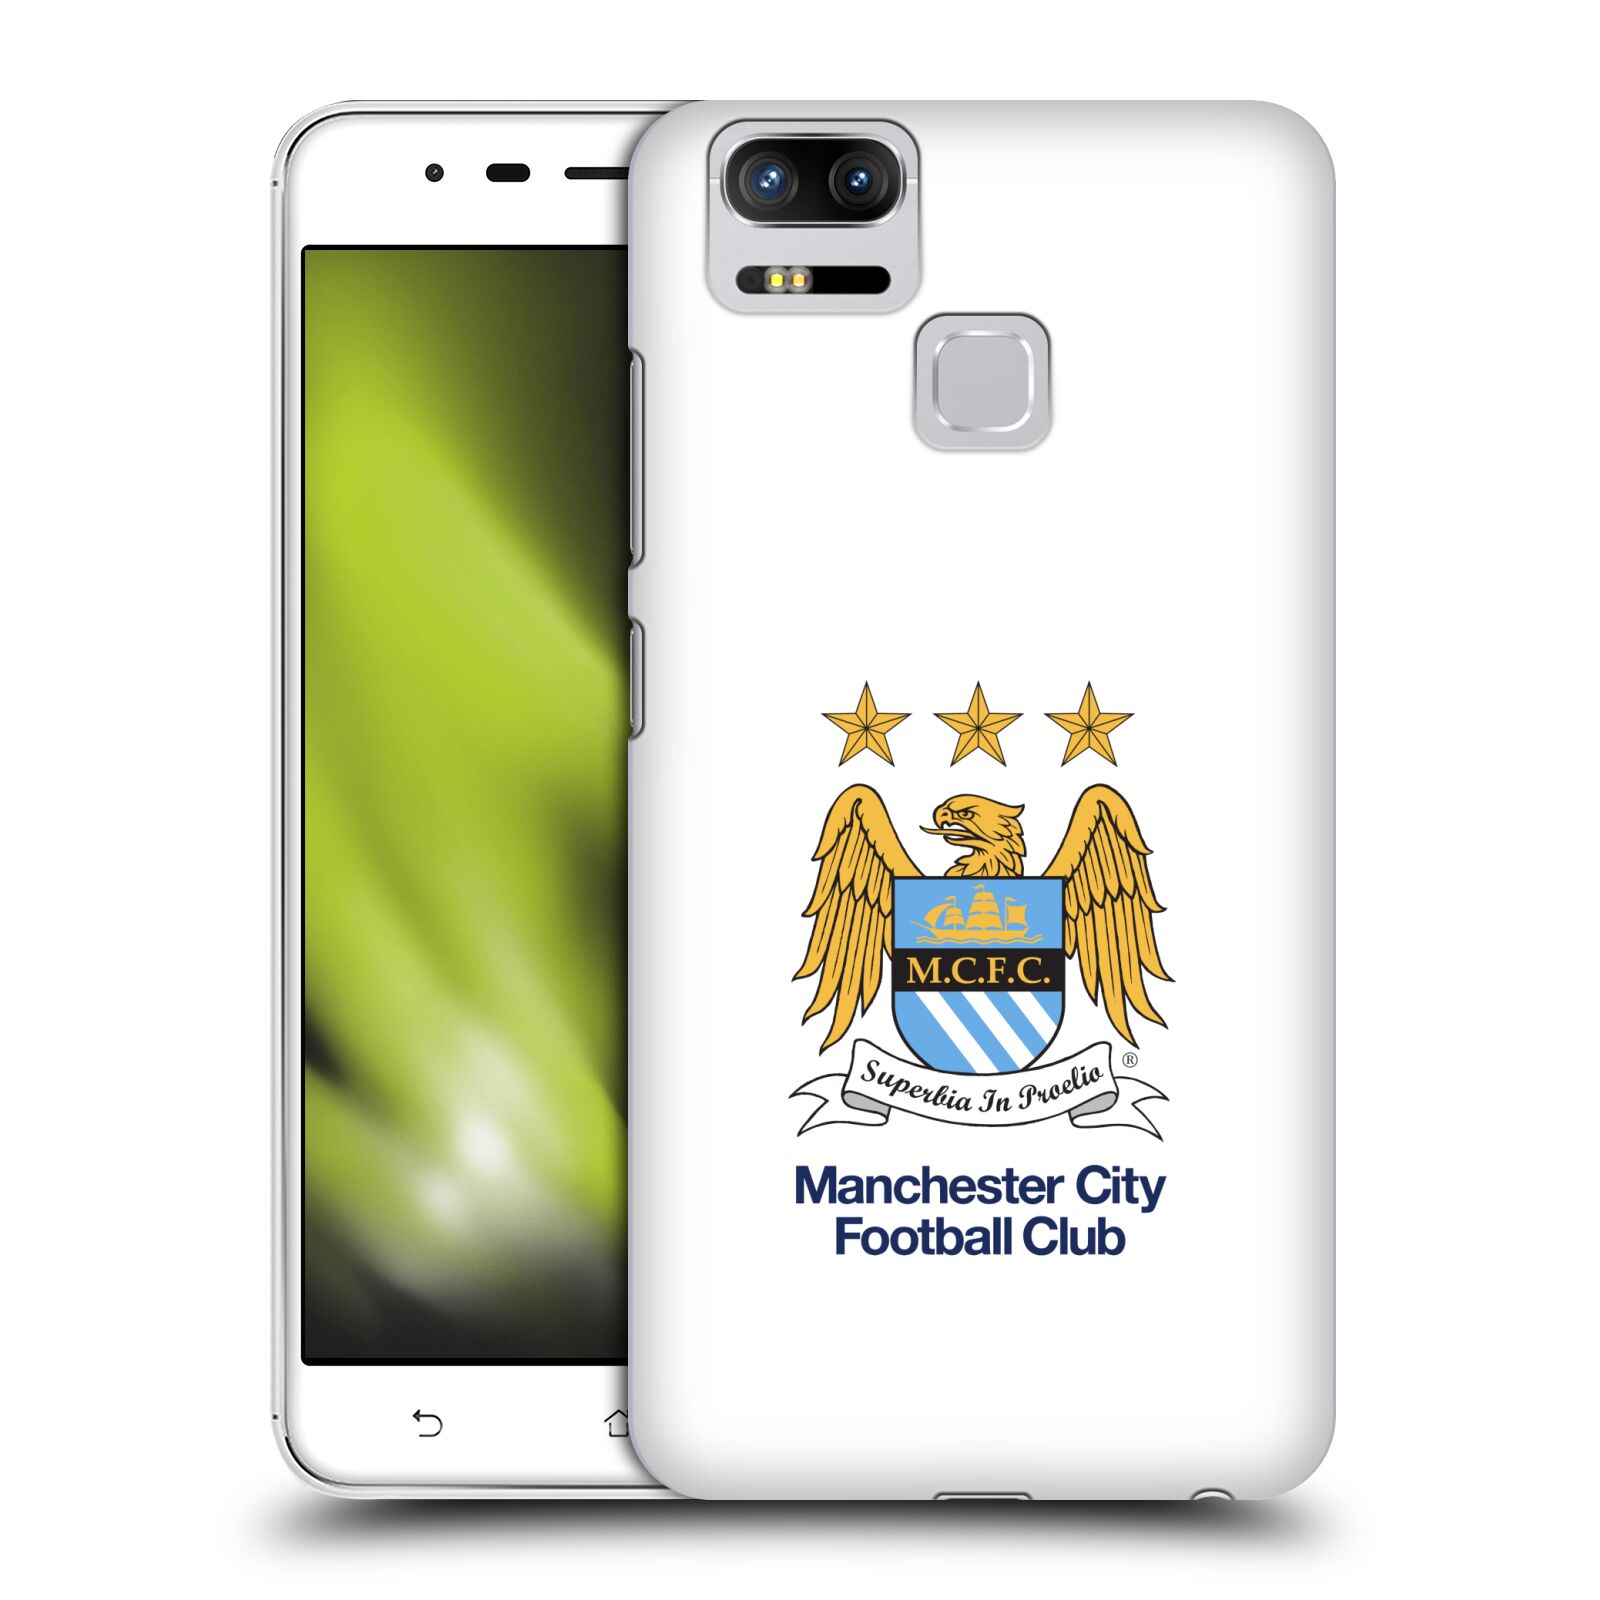 HEAD CASE plastový obal na mobil Asus Zenfone 3 Zoom ZE553KL Fotbalový klub Manchester City bílé pozadí velký znak pták